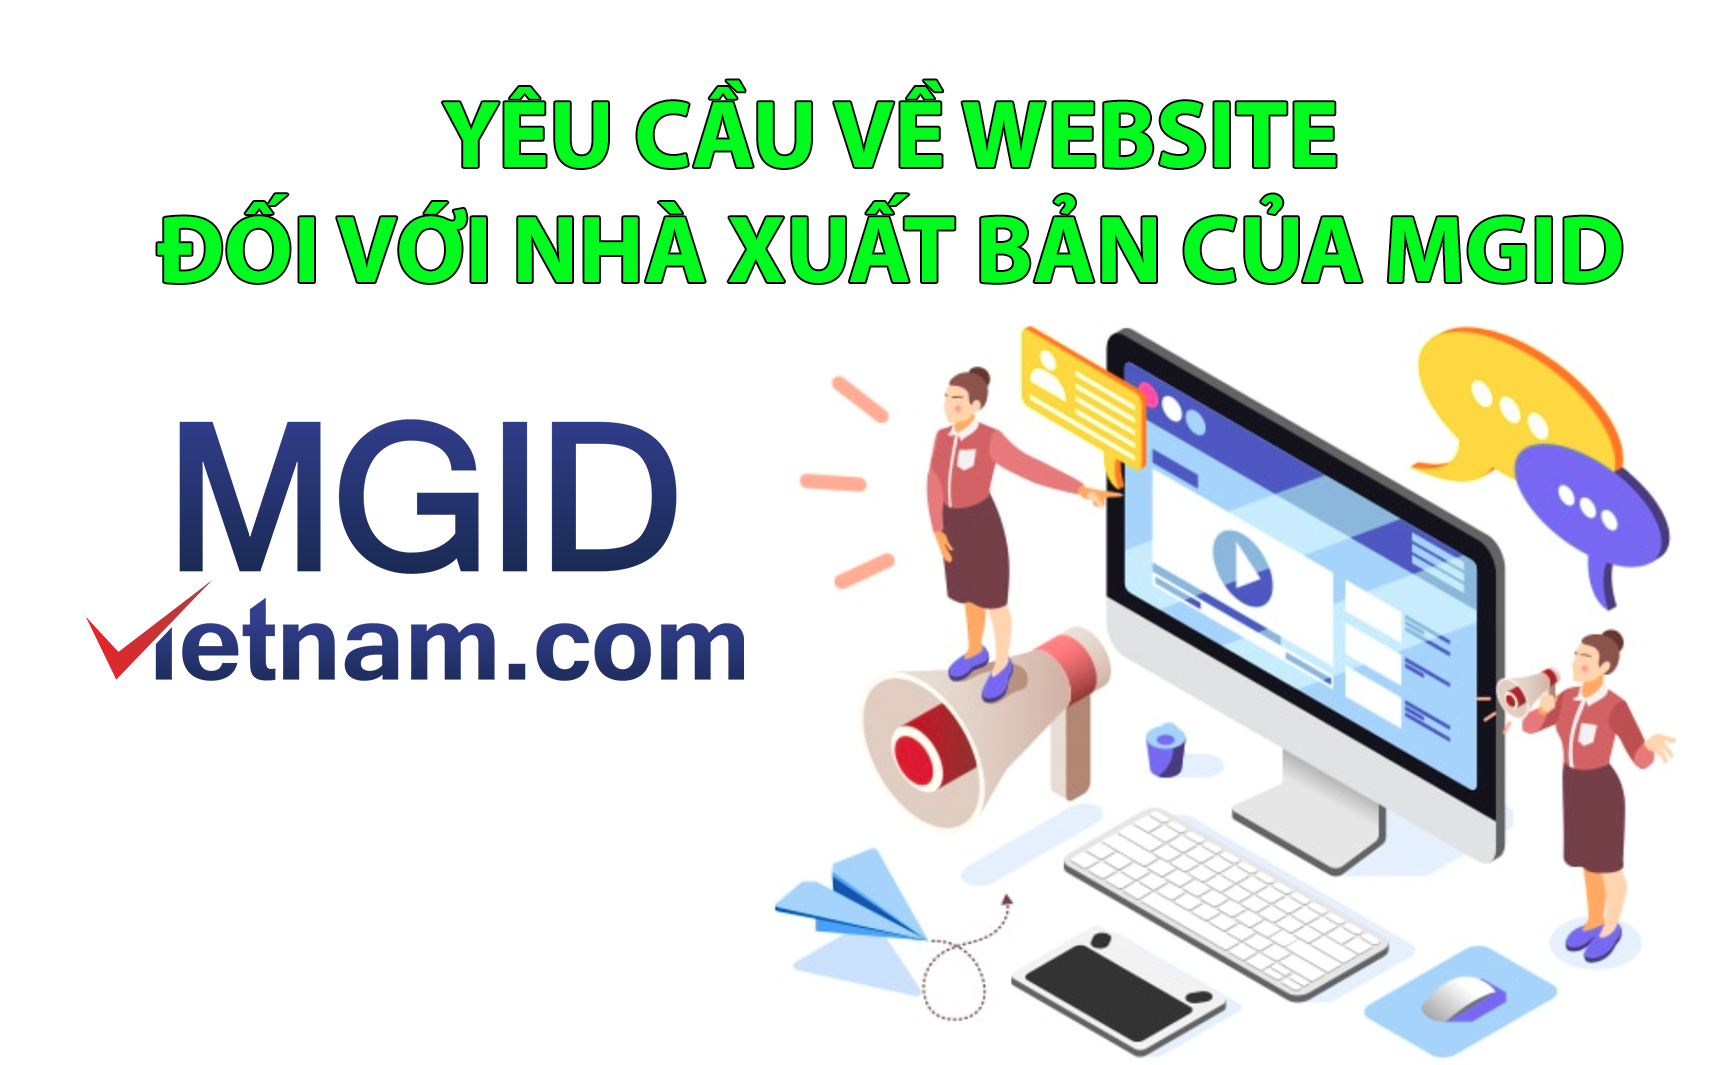 Yêu cầu về website đối với Nhà xuất bản của MGID